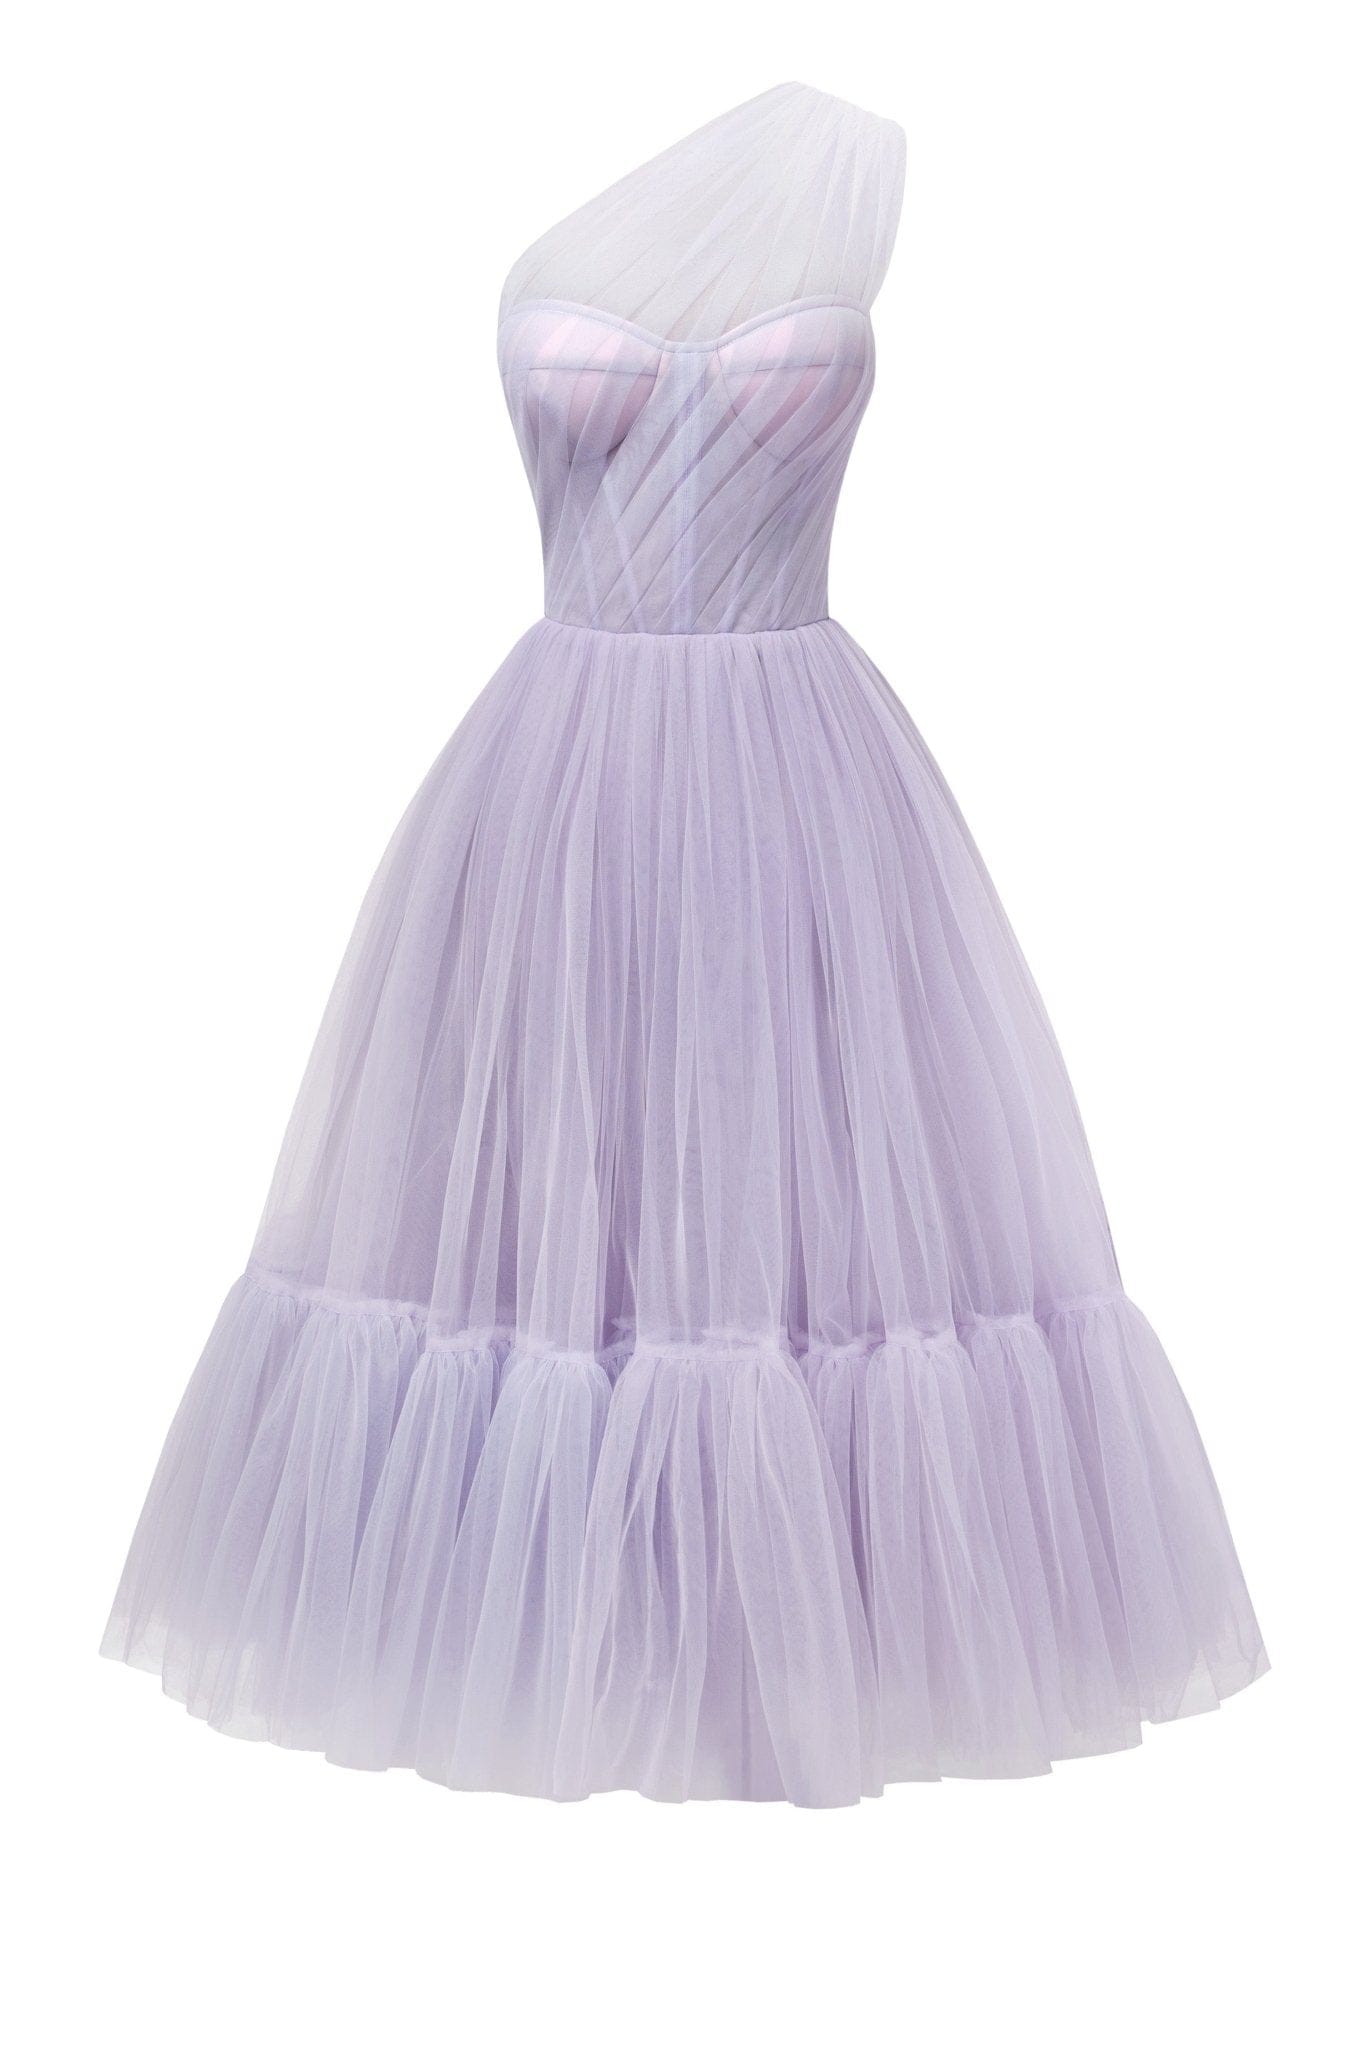 Lavender One-Shoulder Cocktail Tulle Dress - Milla